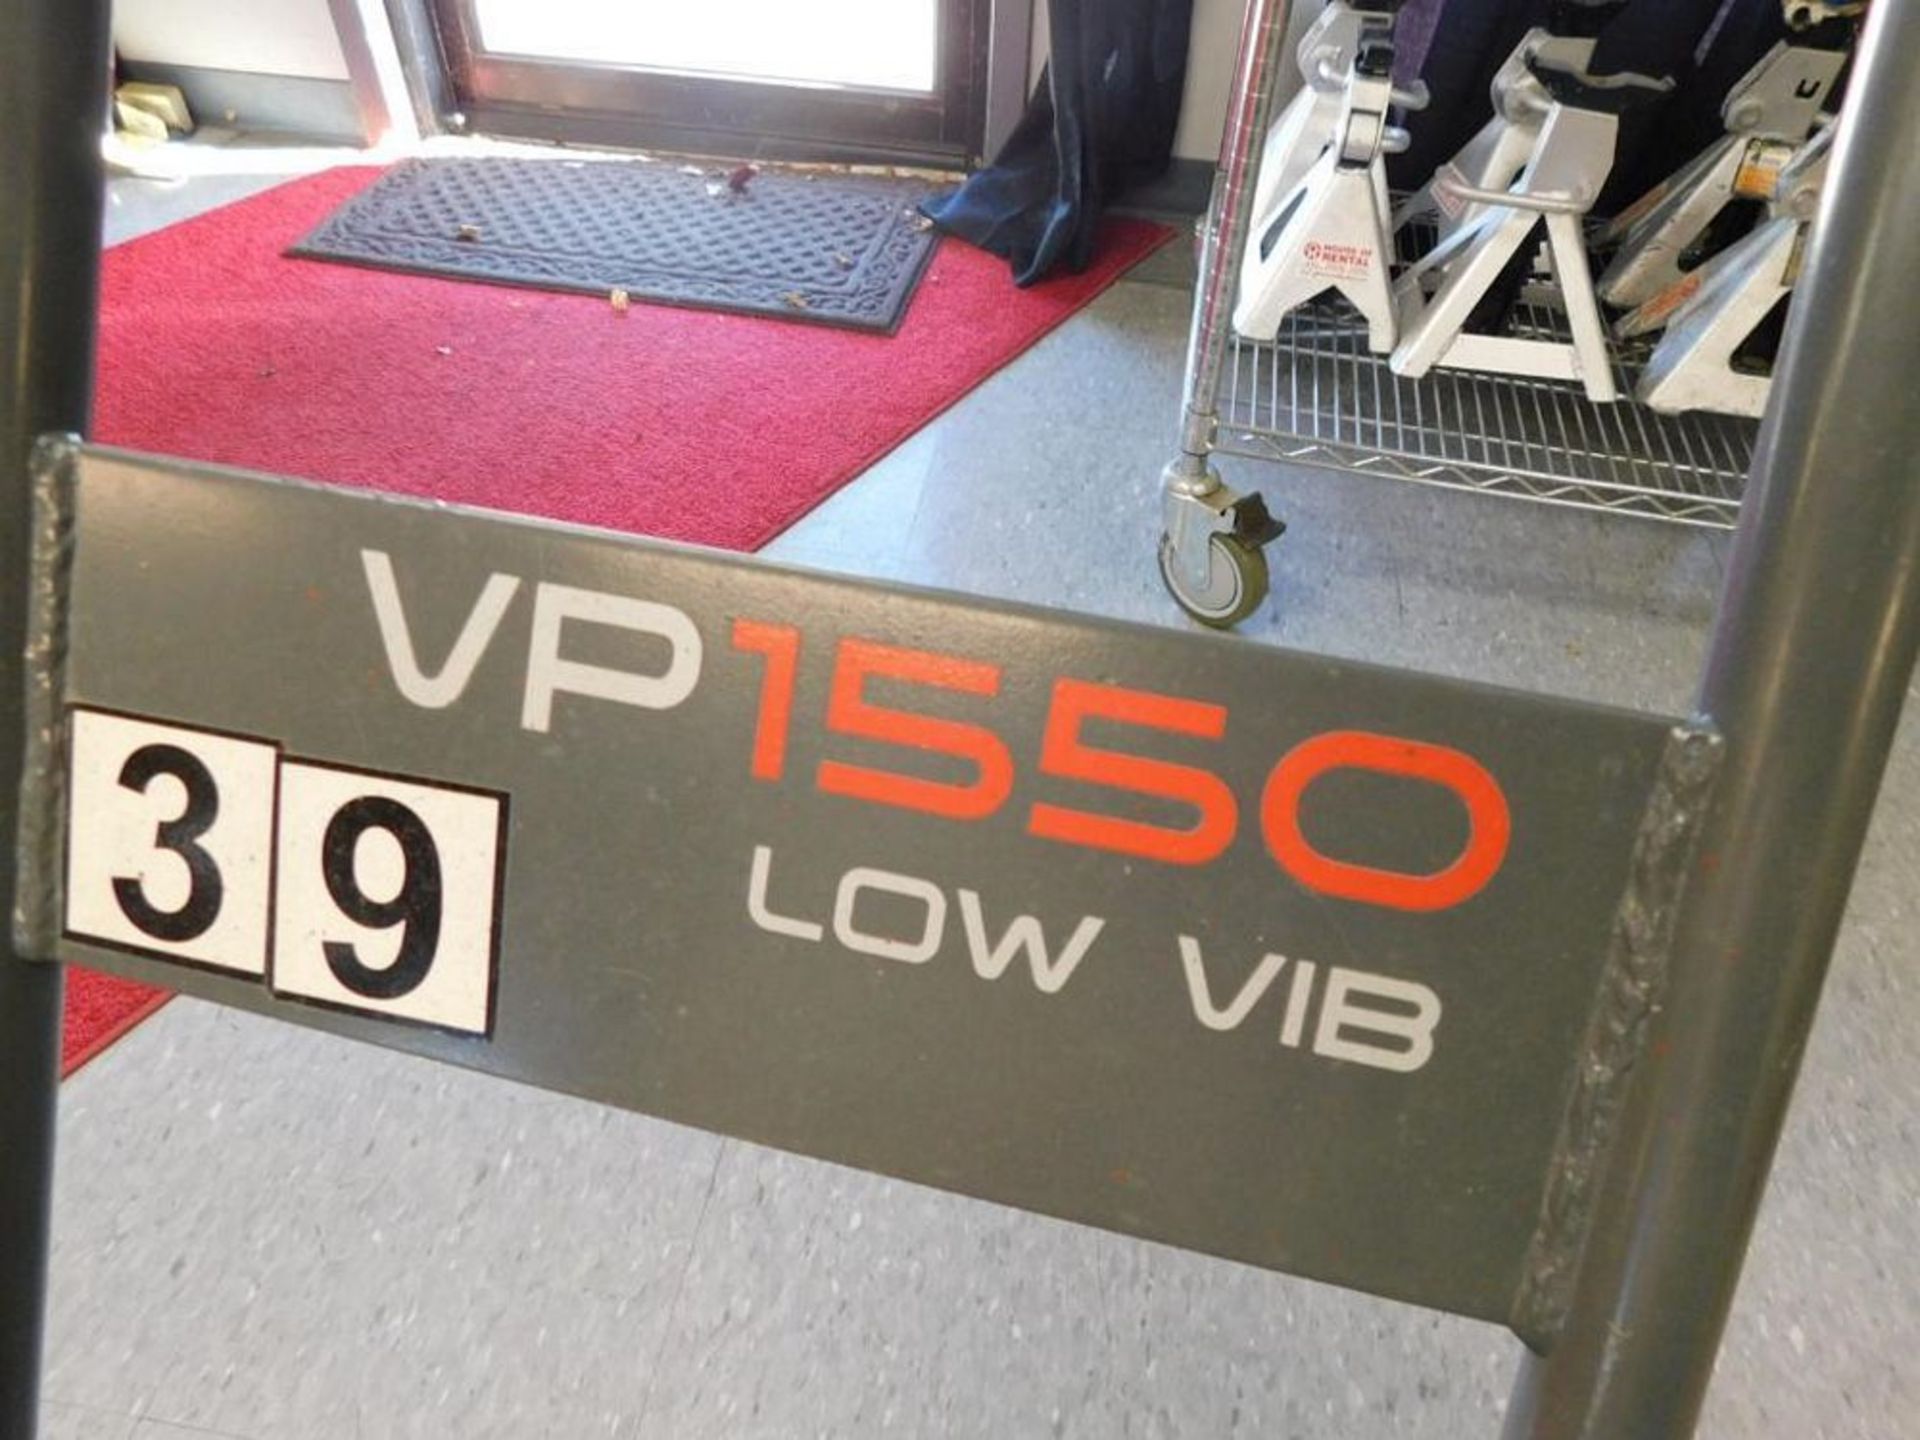 Wacker Neuson VP 1550 Low Vib Vibratory Plate Compactor w/Honda GX160 Gas Motor (LOCATION: 318 N. - Image 4 of 4